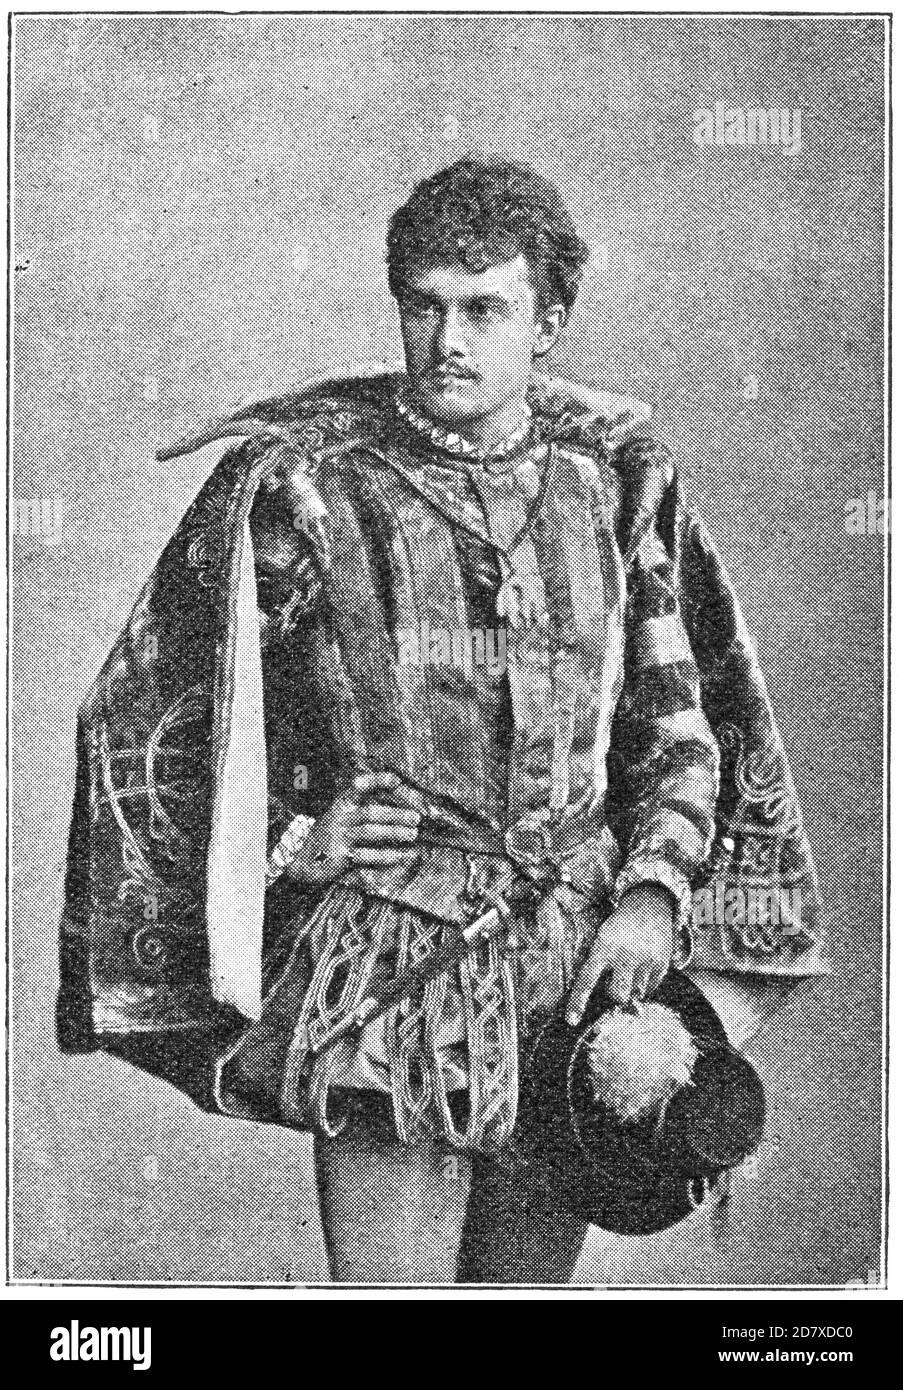 Porträt von Josef Kainz (Rolle im Drama Don Carlos) - ein österreichischer Schauspieler ungarischer Geburt. Illustration des 19. Jahrhunderts. Weißer Hintergrund. Stockfoto